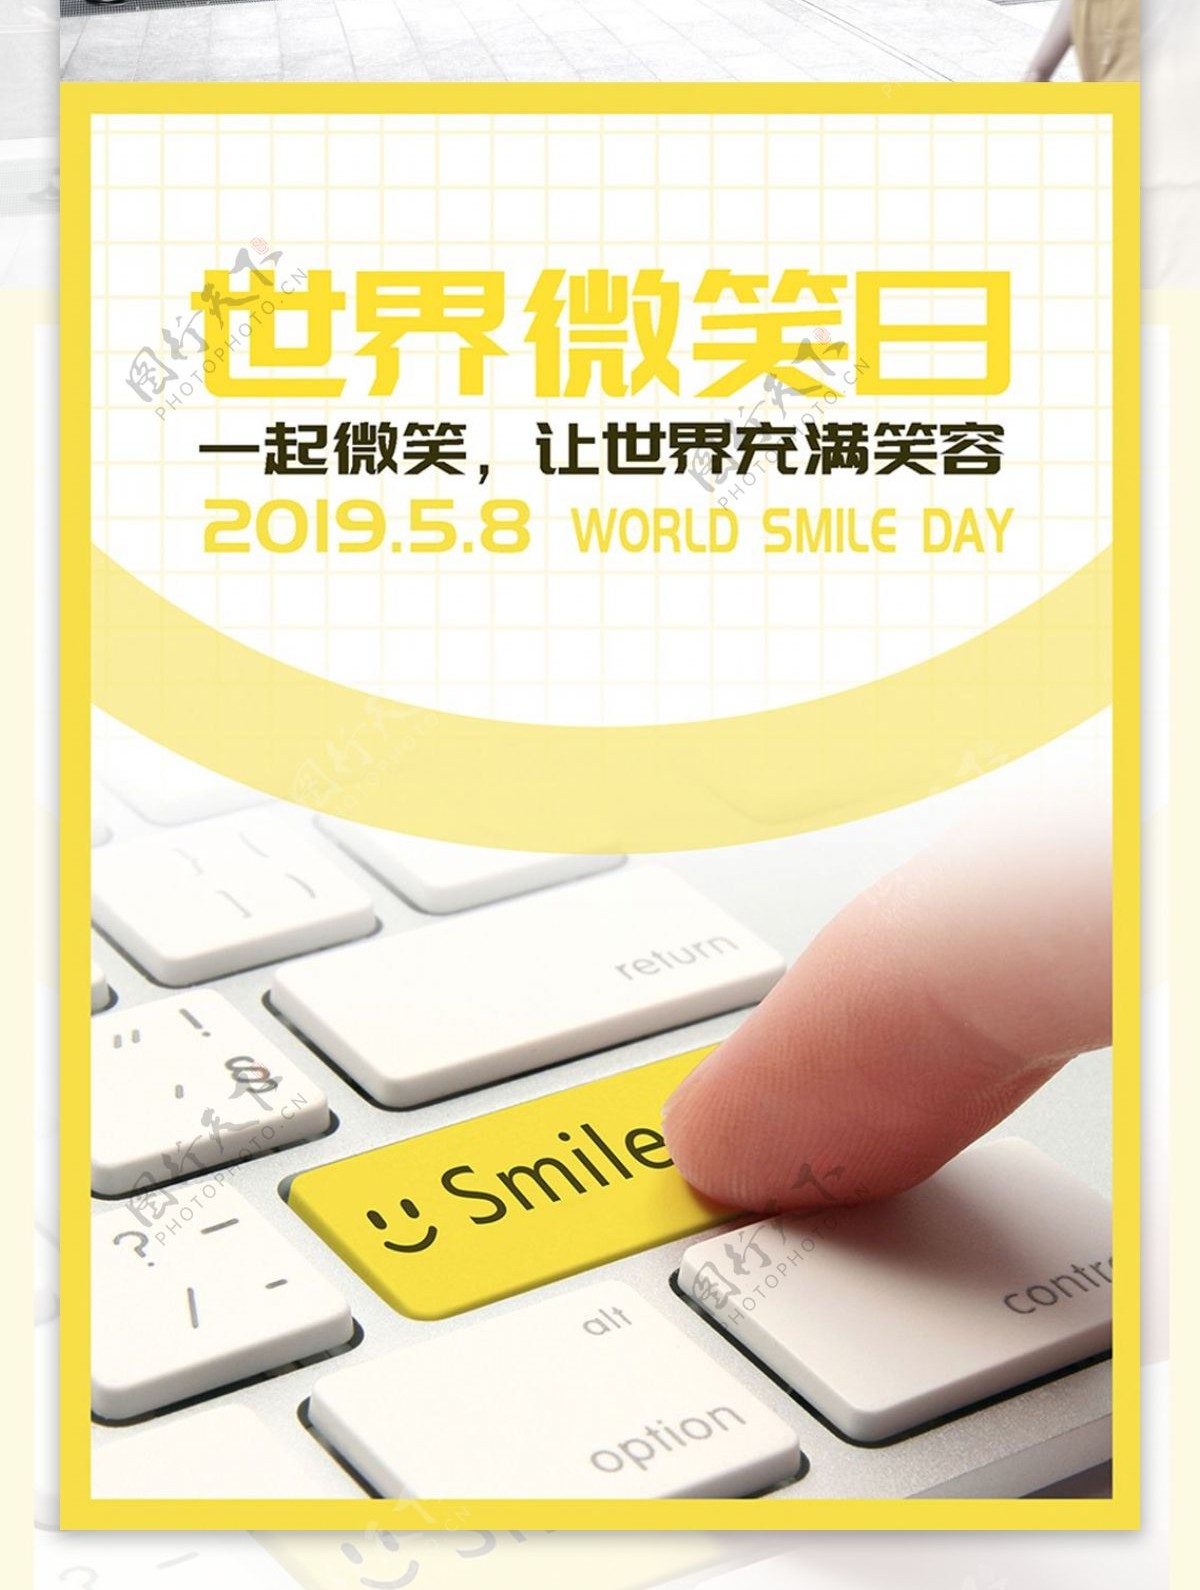 简约小清新风格世界微笑日节日海报平面广告